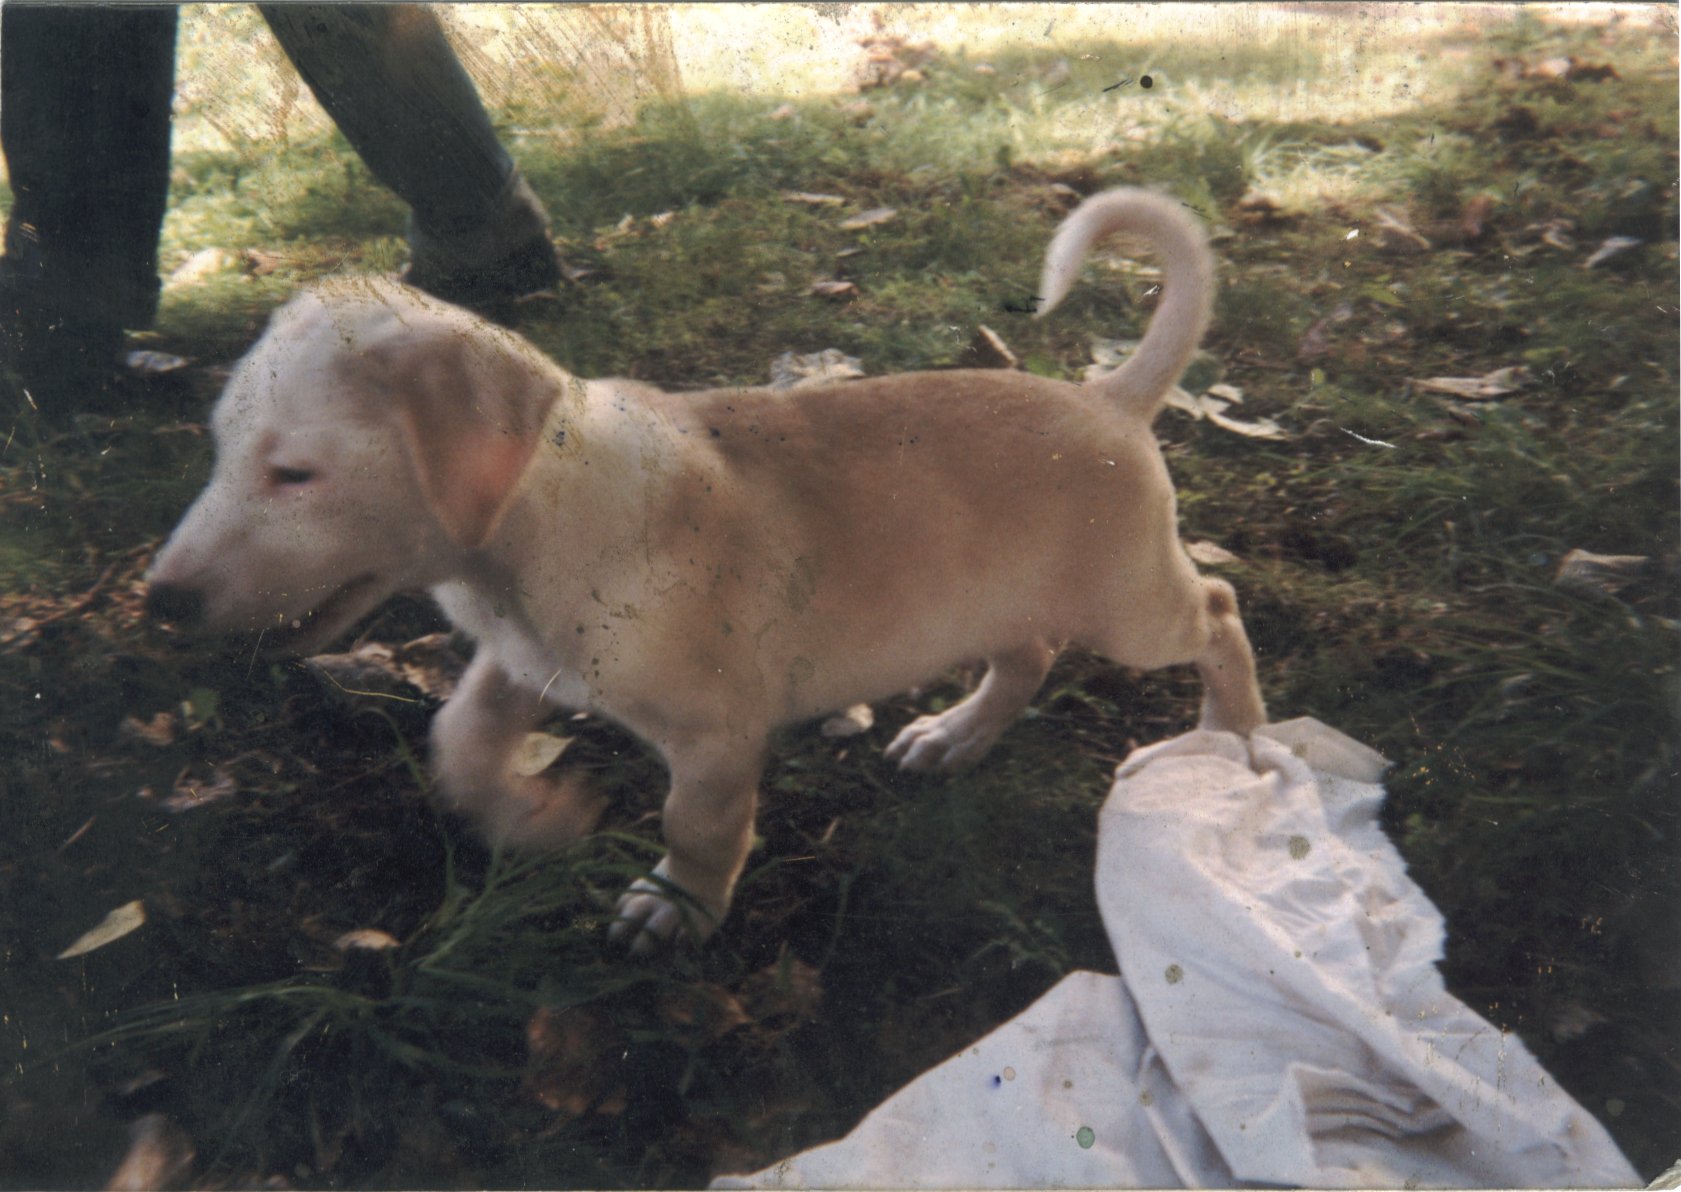 Photo von Ralf Splettstoessers Hund Ganesh als Welpe am 22. Juli 1999 im Berliner Bezirk Friedrichshain.